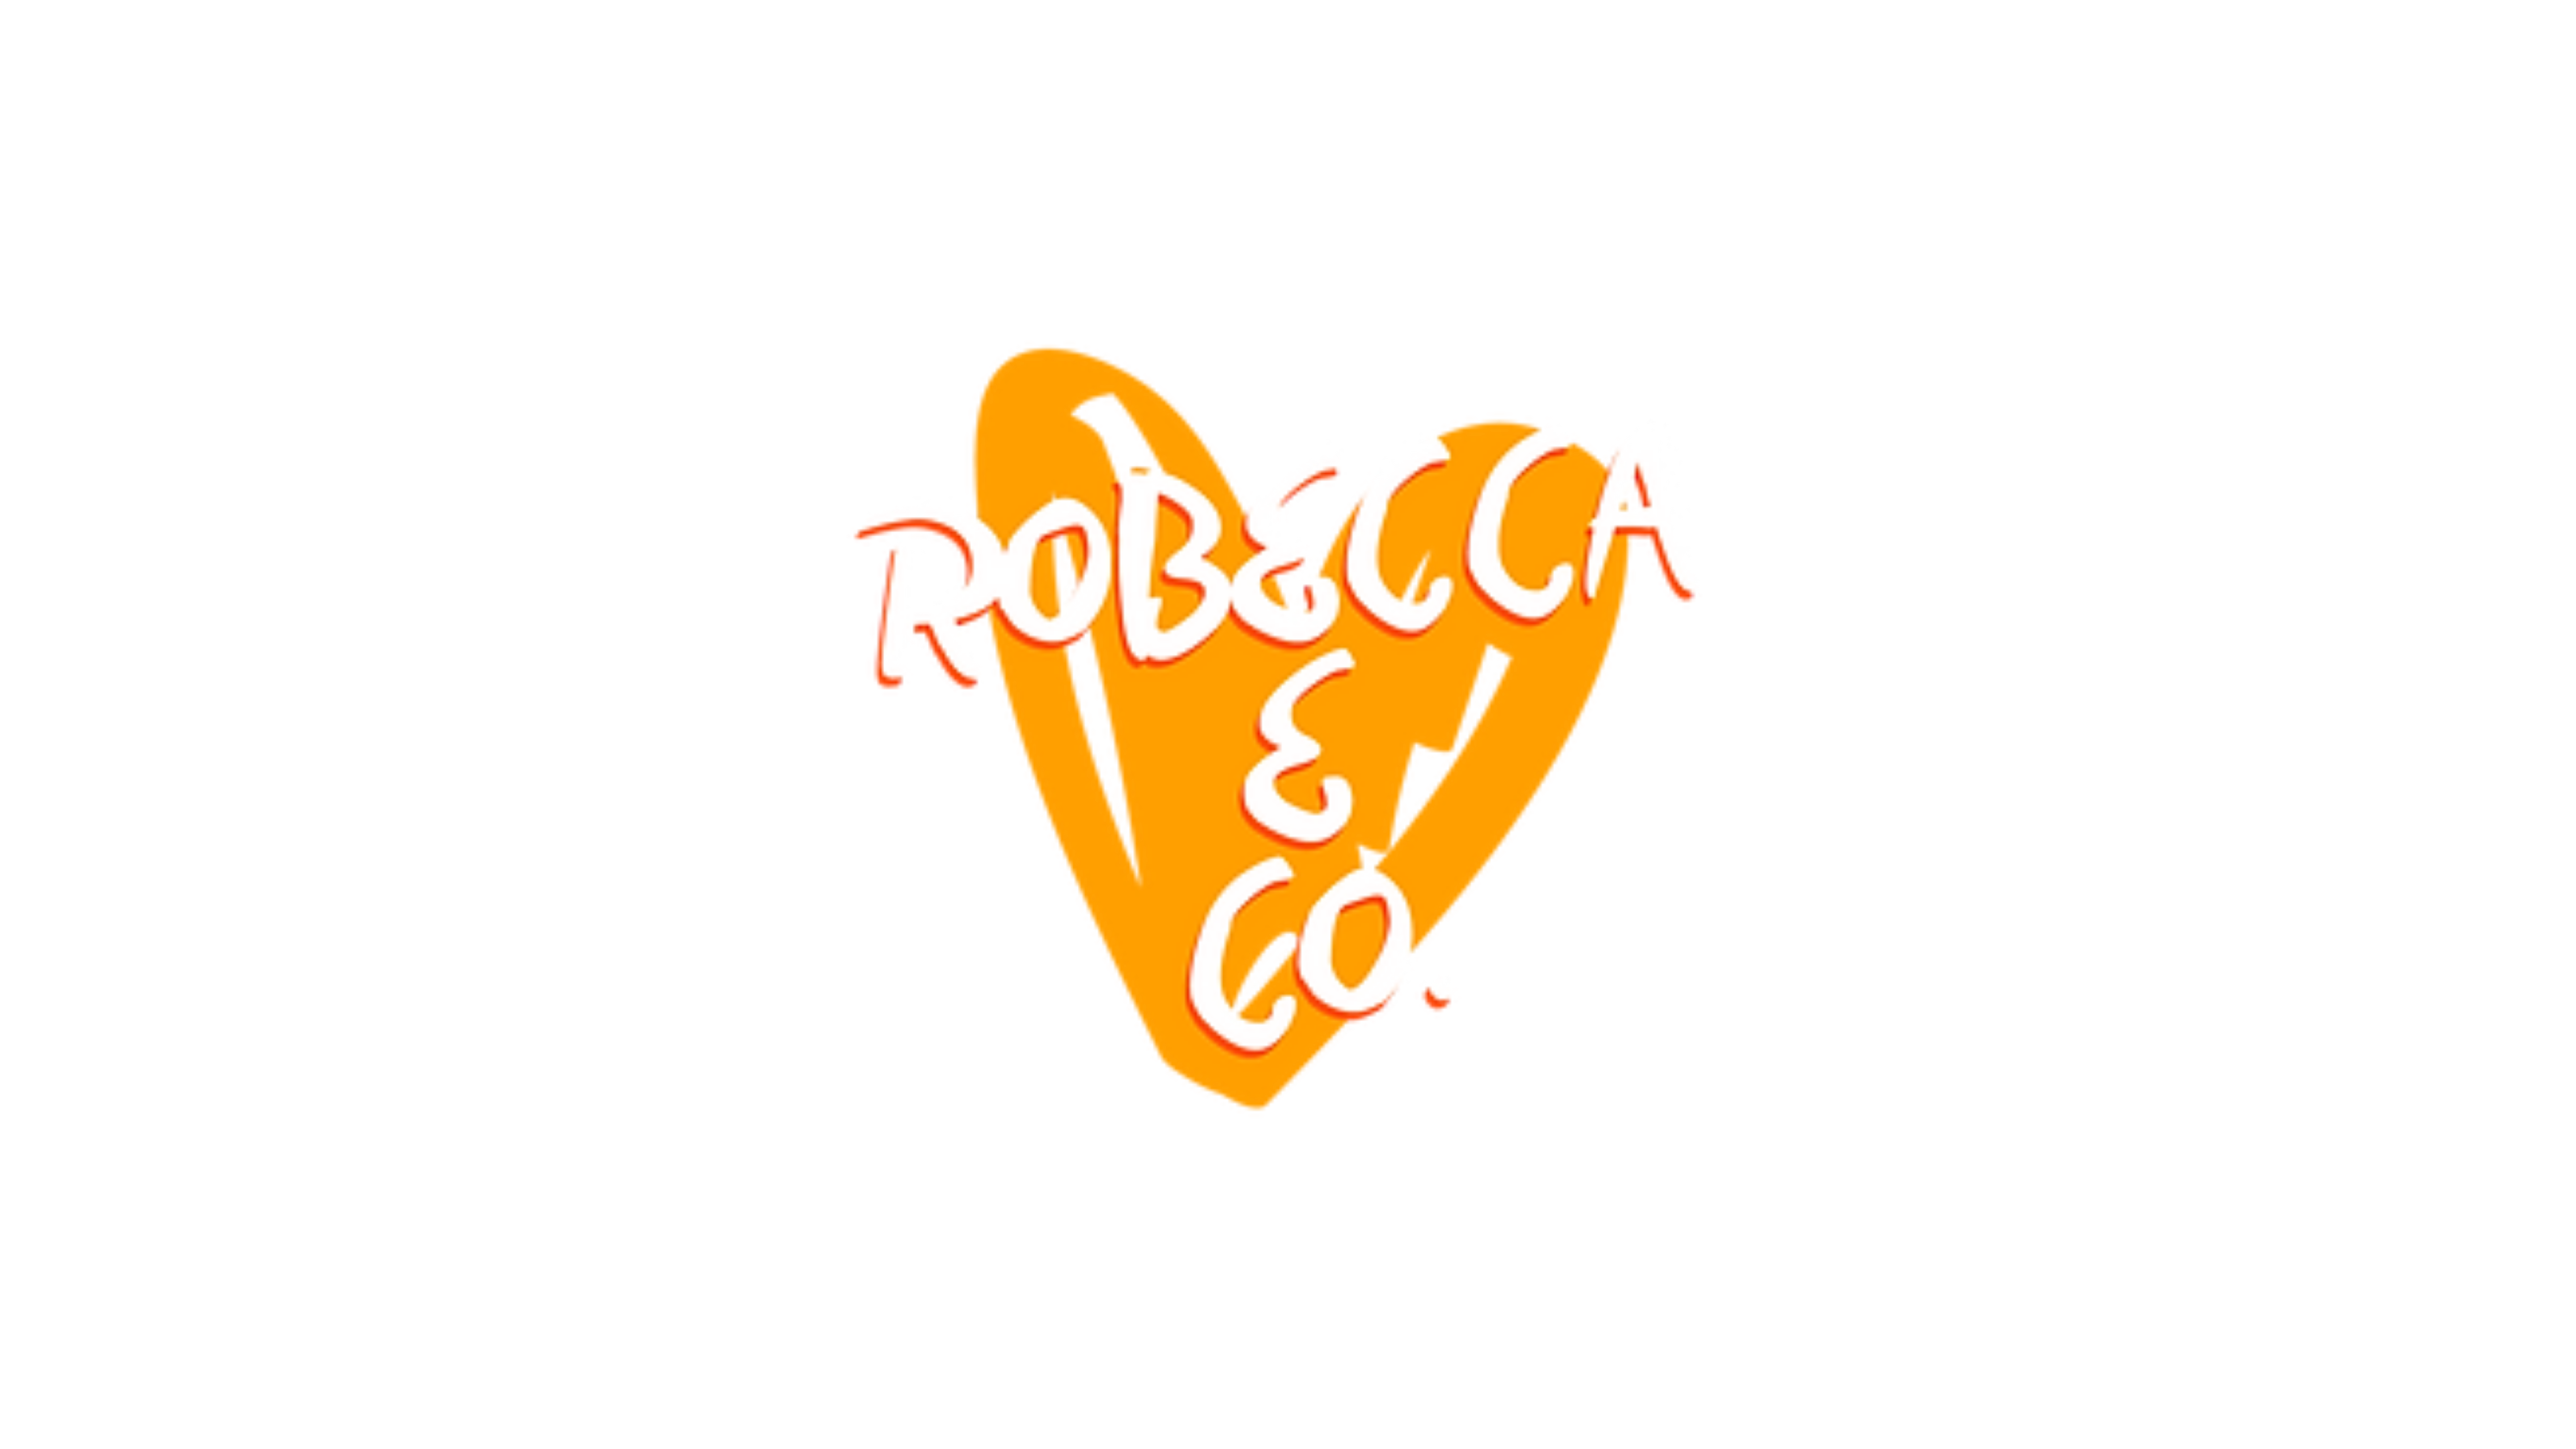 ROBECCA & CO